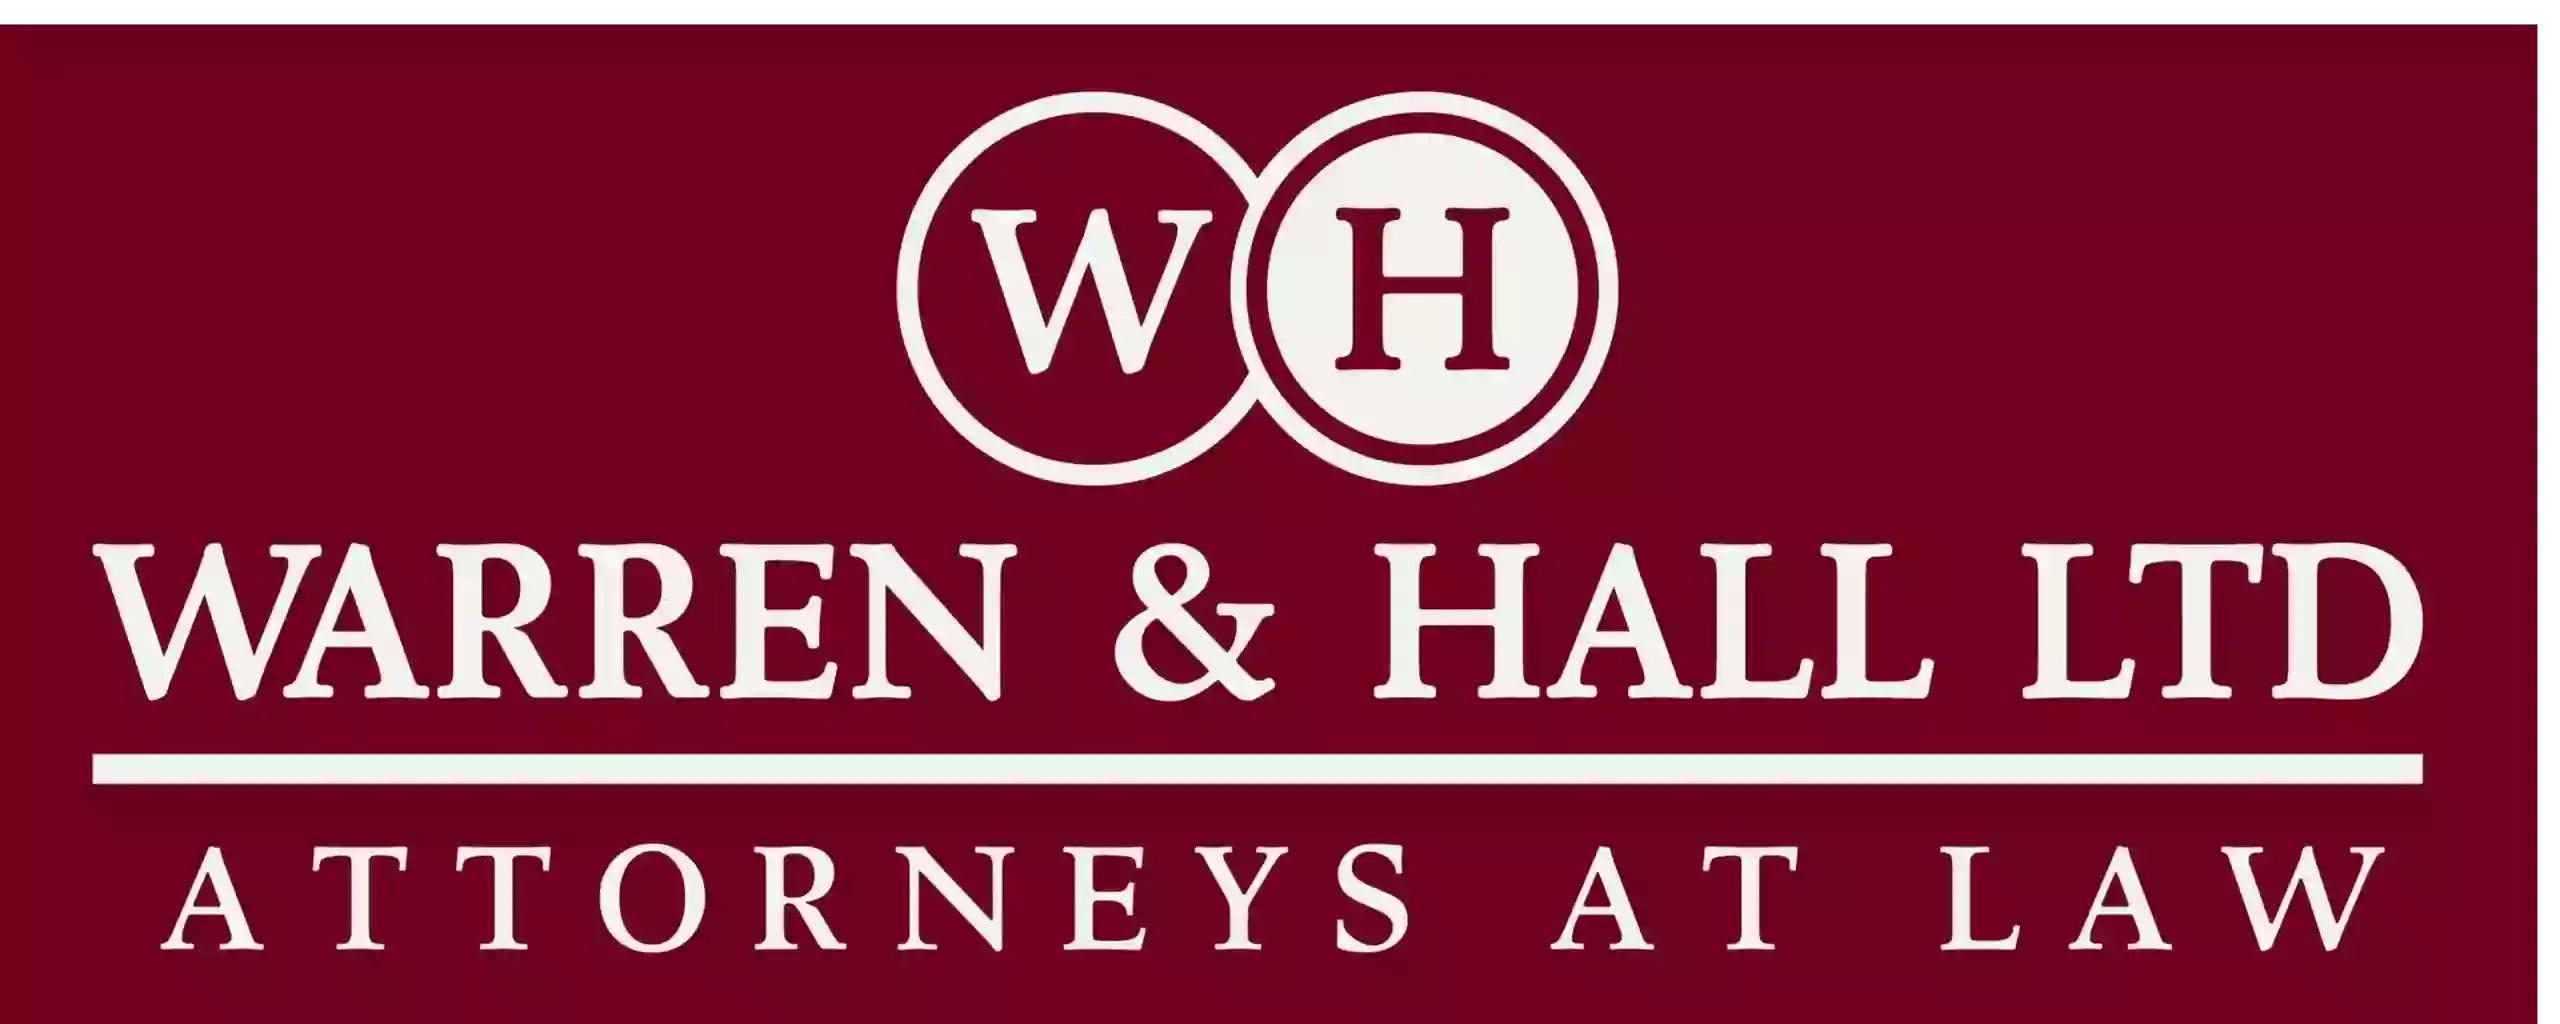 Warren & Hall, Ltd.